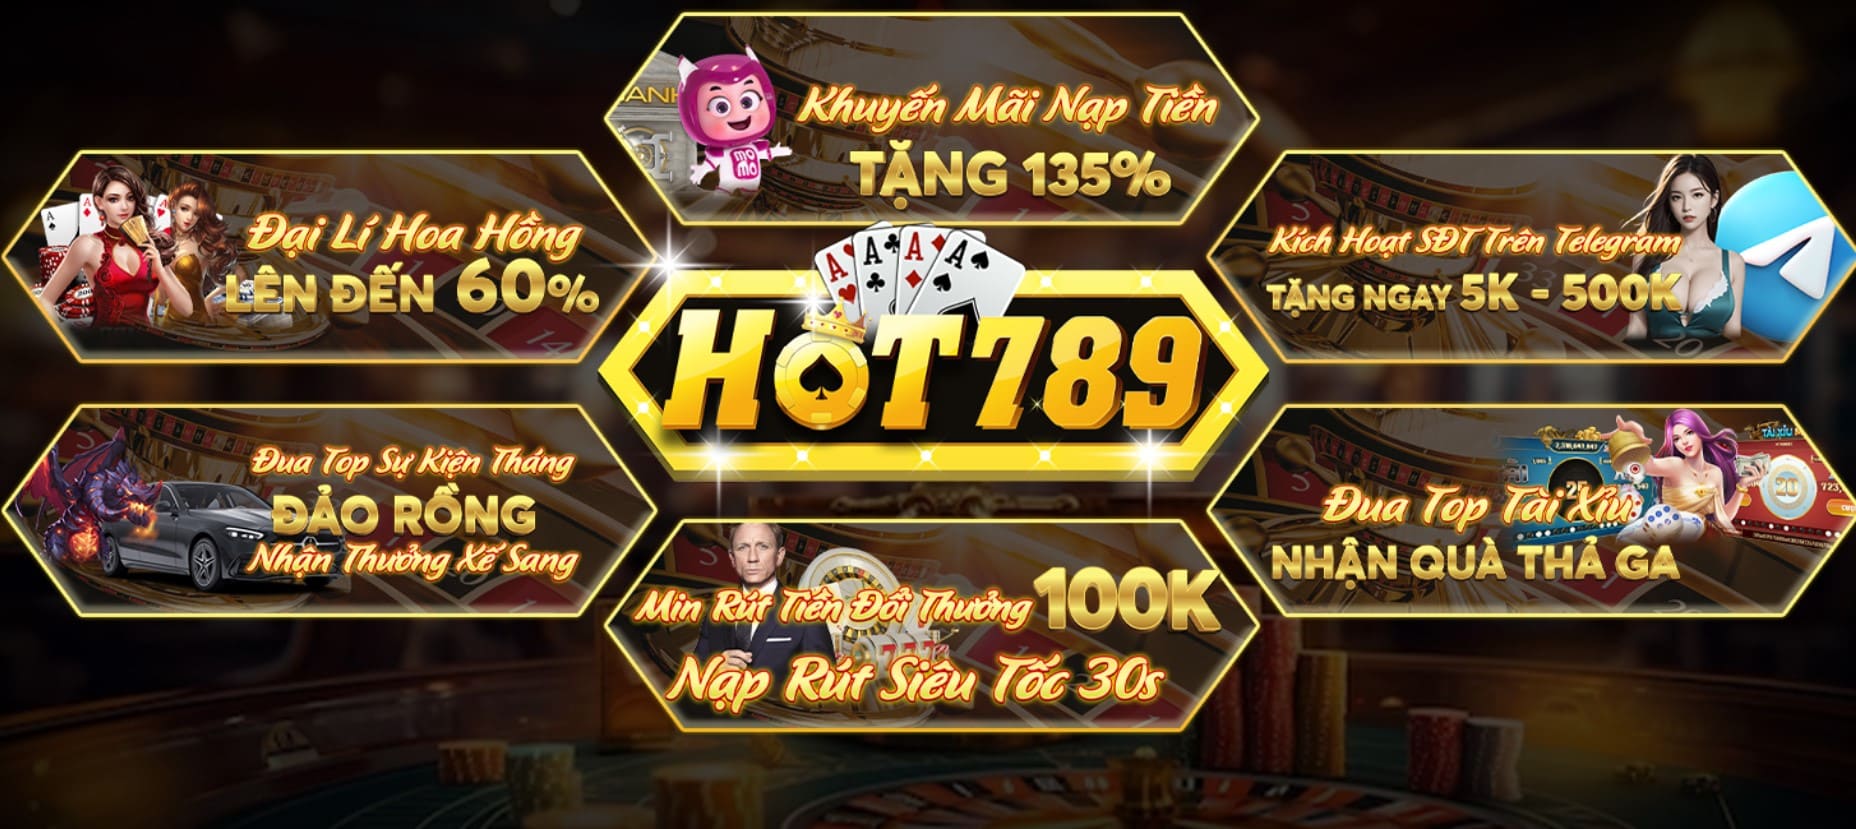 Hot789 Vip game bài tài lộc | Đăng ký Hot789.Vip +50k